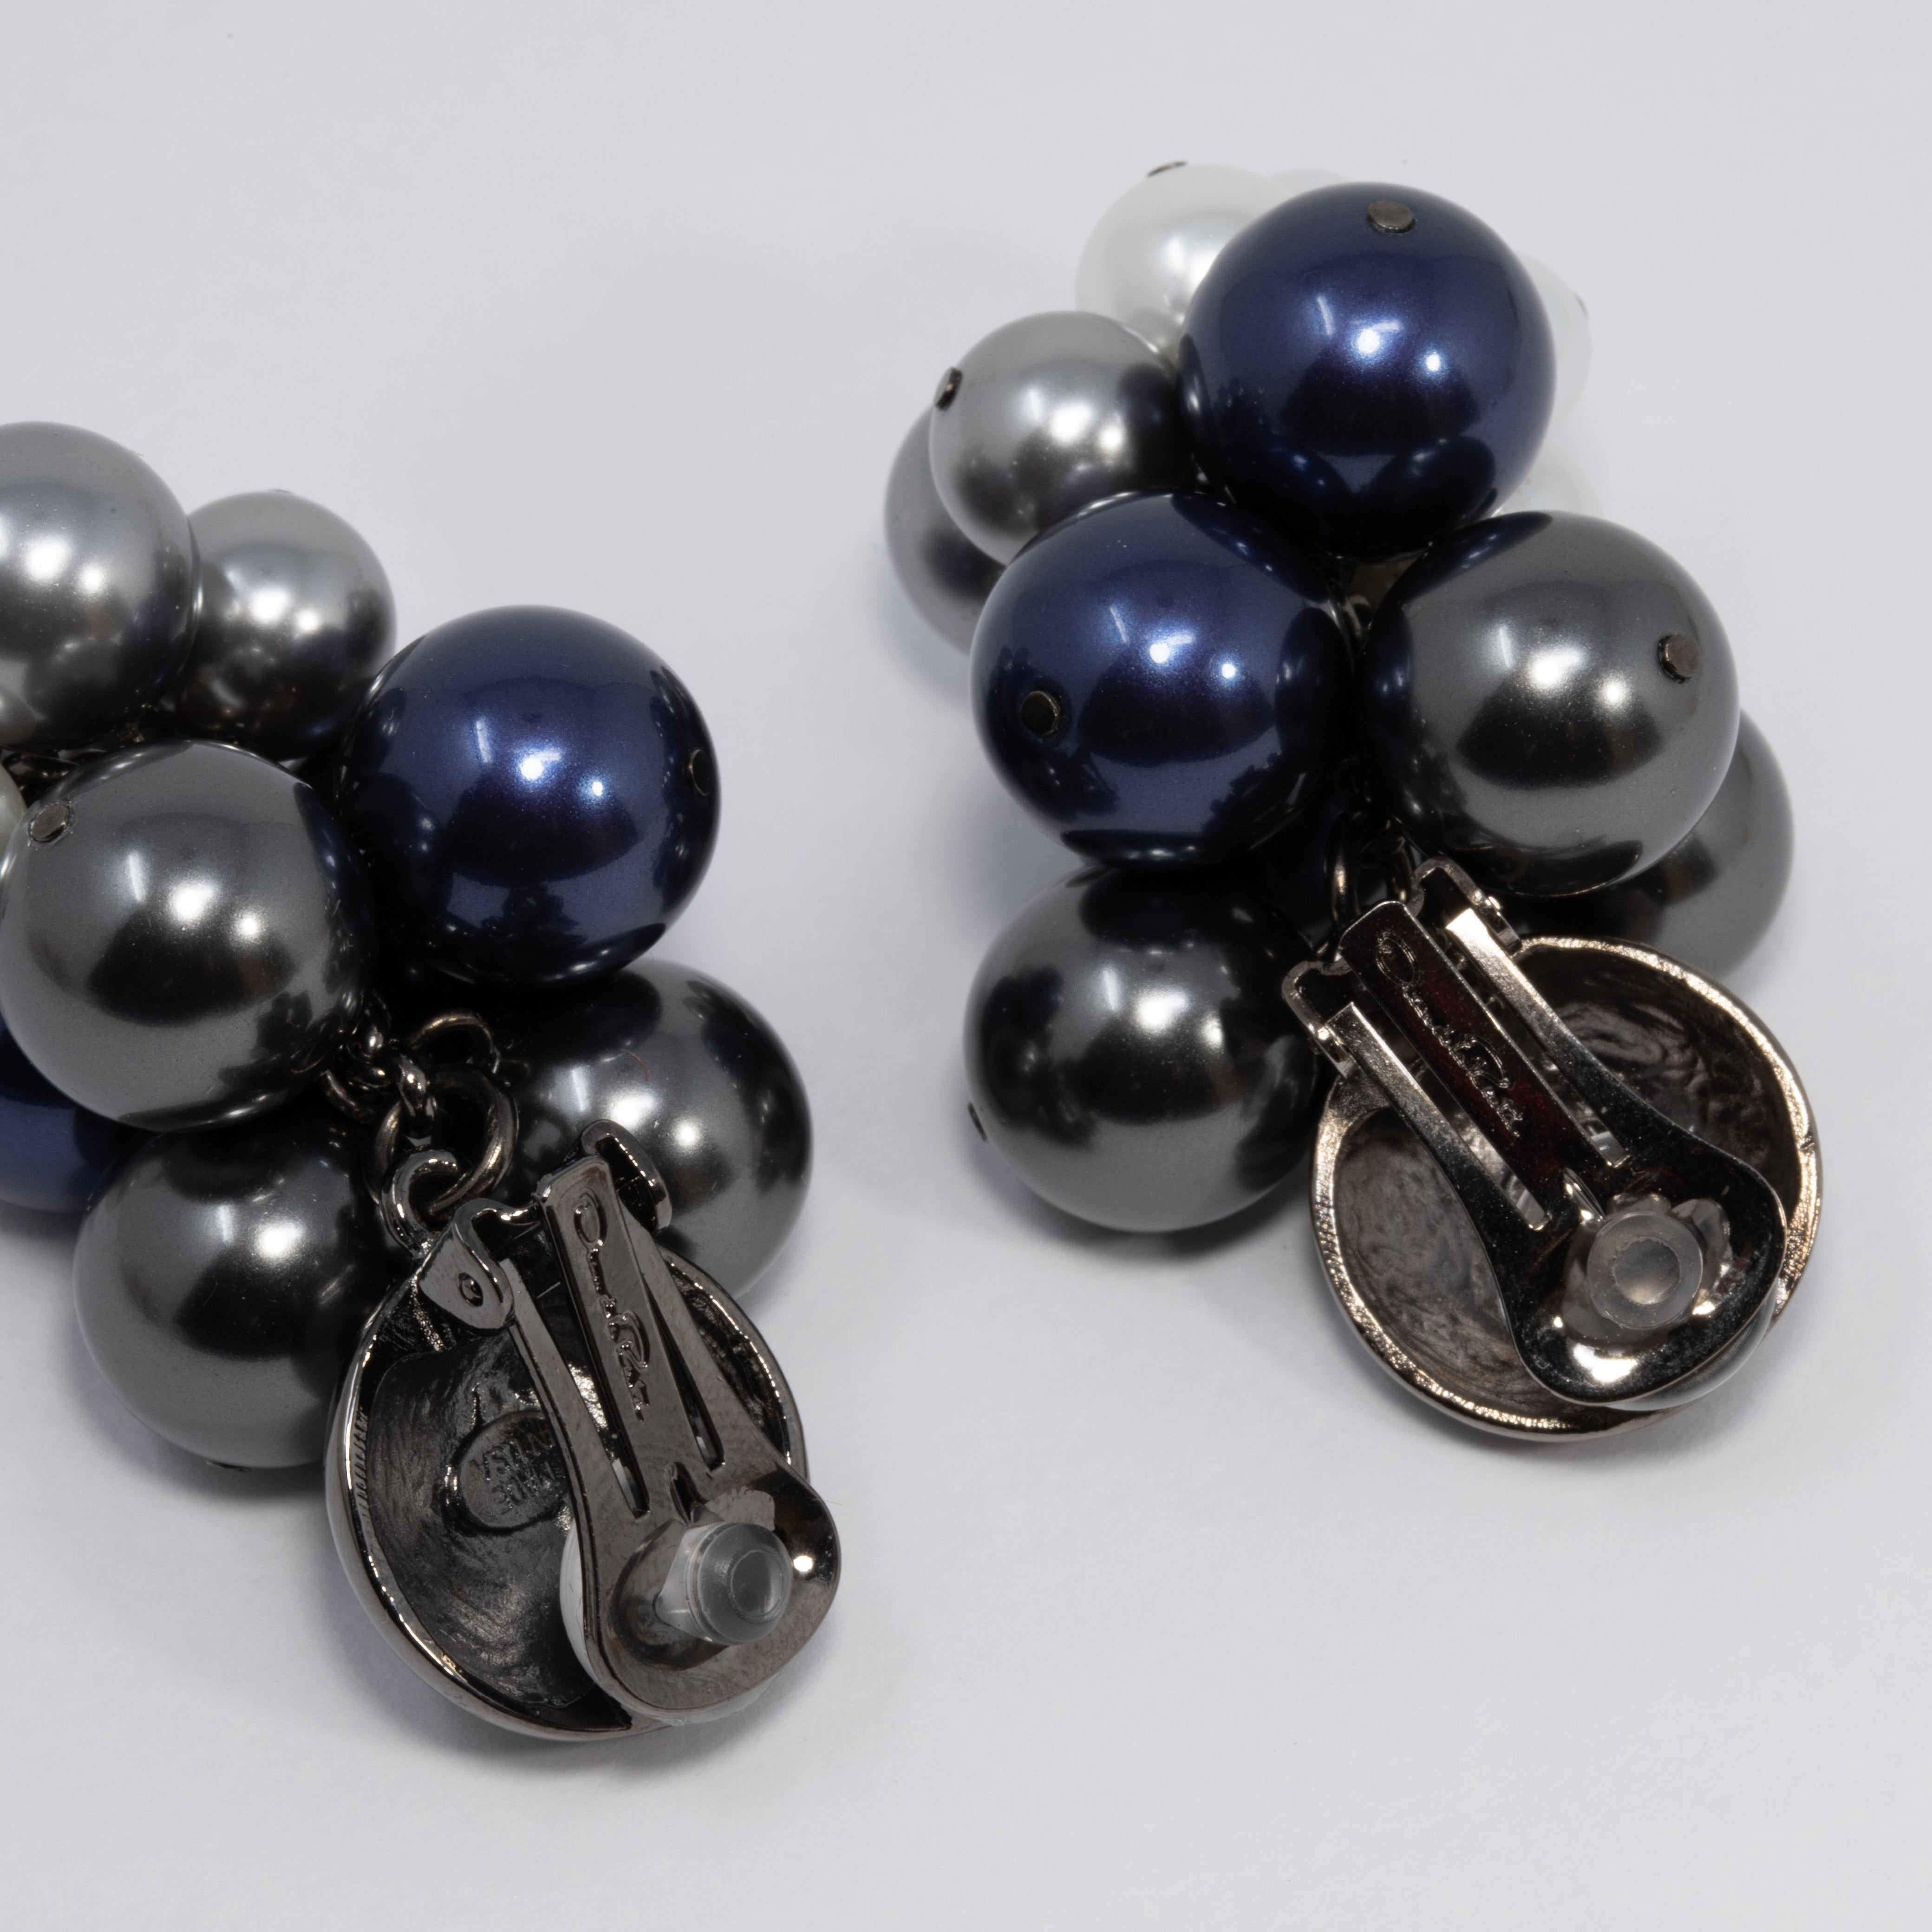 Une paire de boucles d'oreilles à clip Oscar de la Renta. Chacune d'entre elles comporte une grappe de fausses perles bleues, grises et blanches de différentes tailles. Audacieux et élégant ! 

Poinçons : Oscar de la Renta, Made in USA